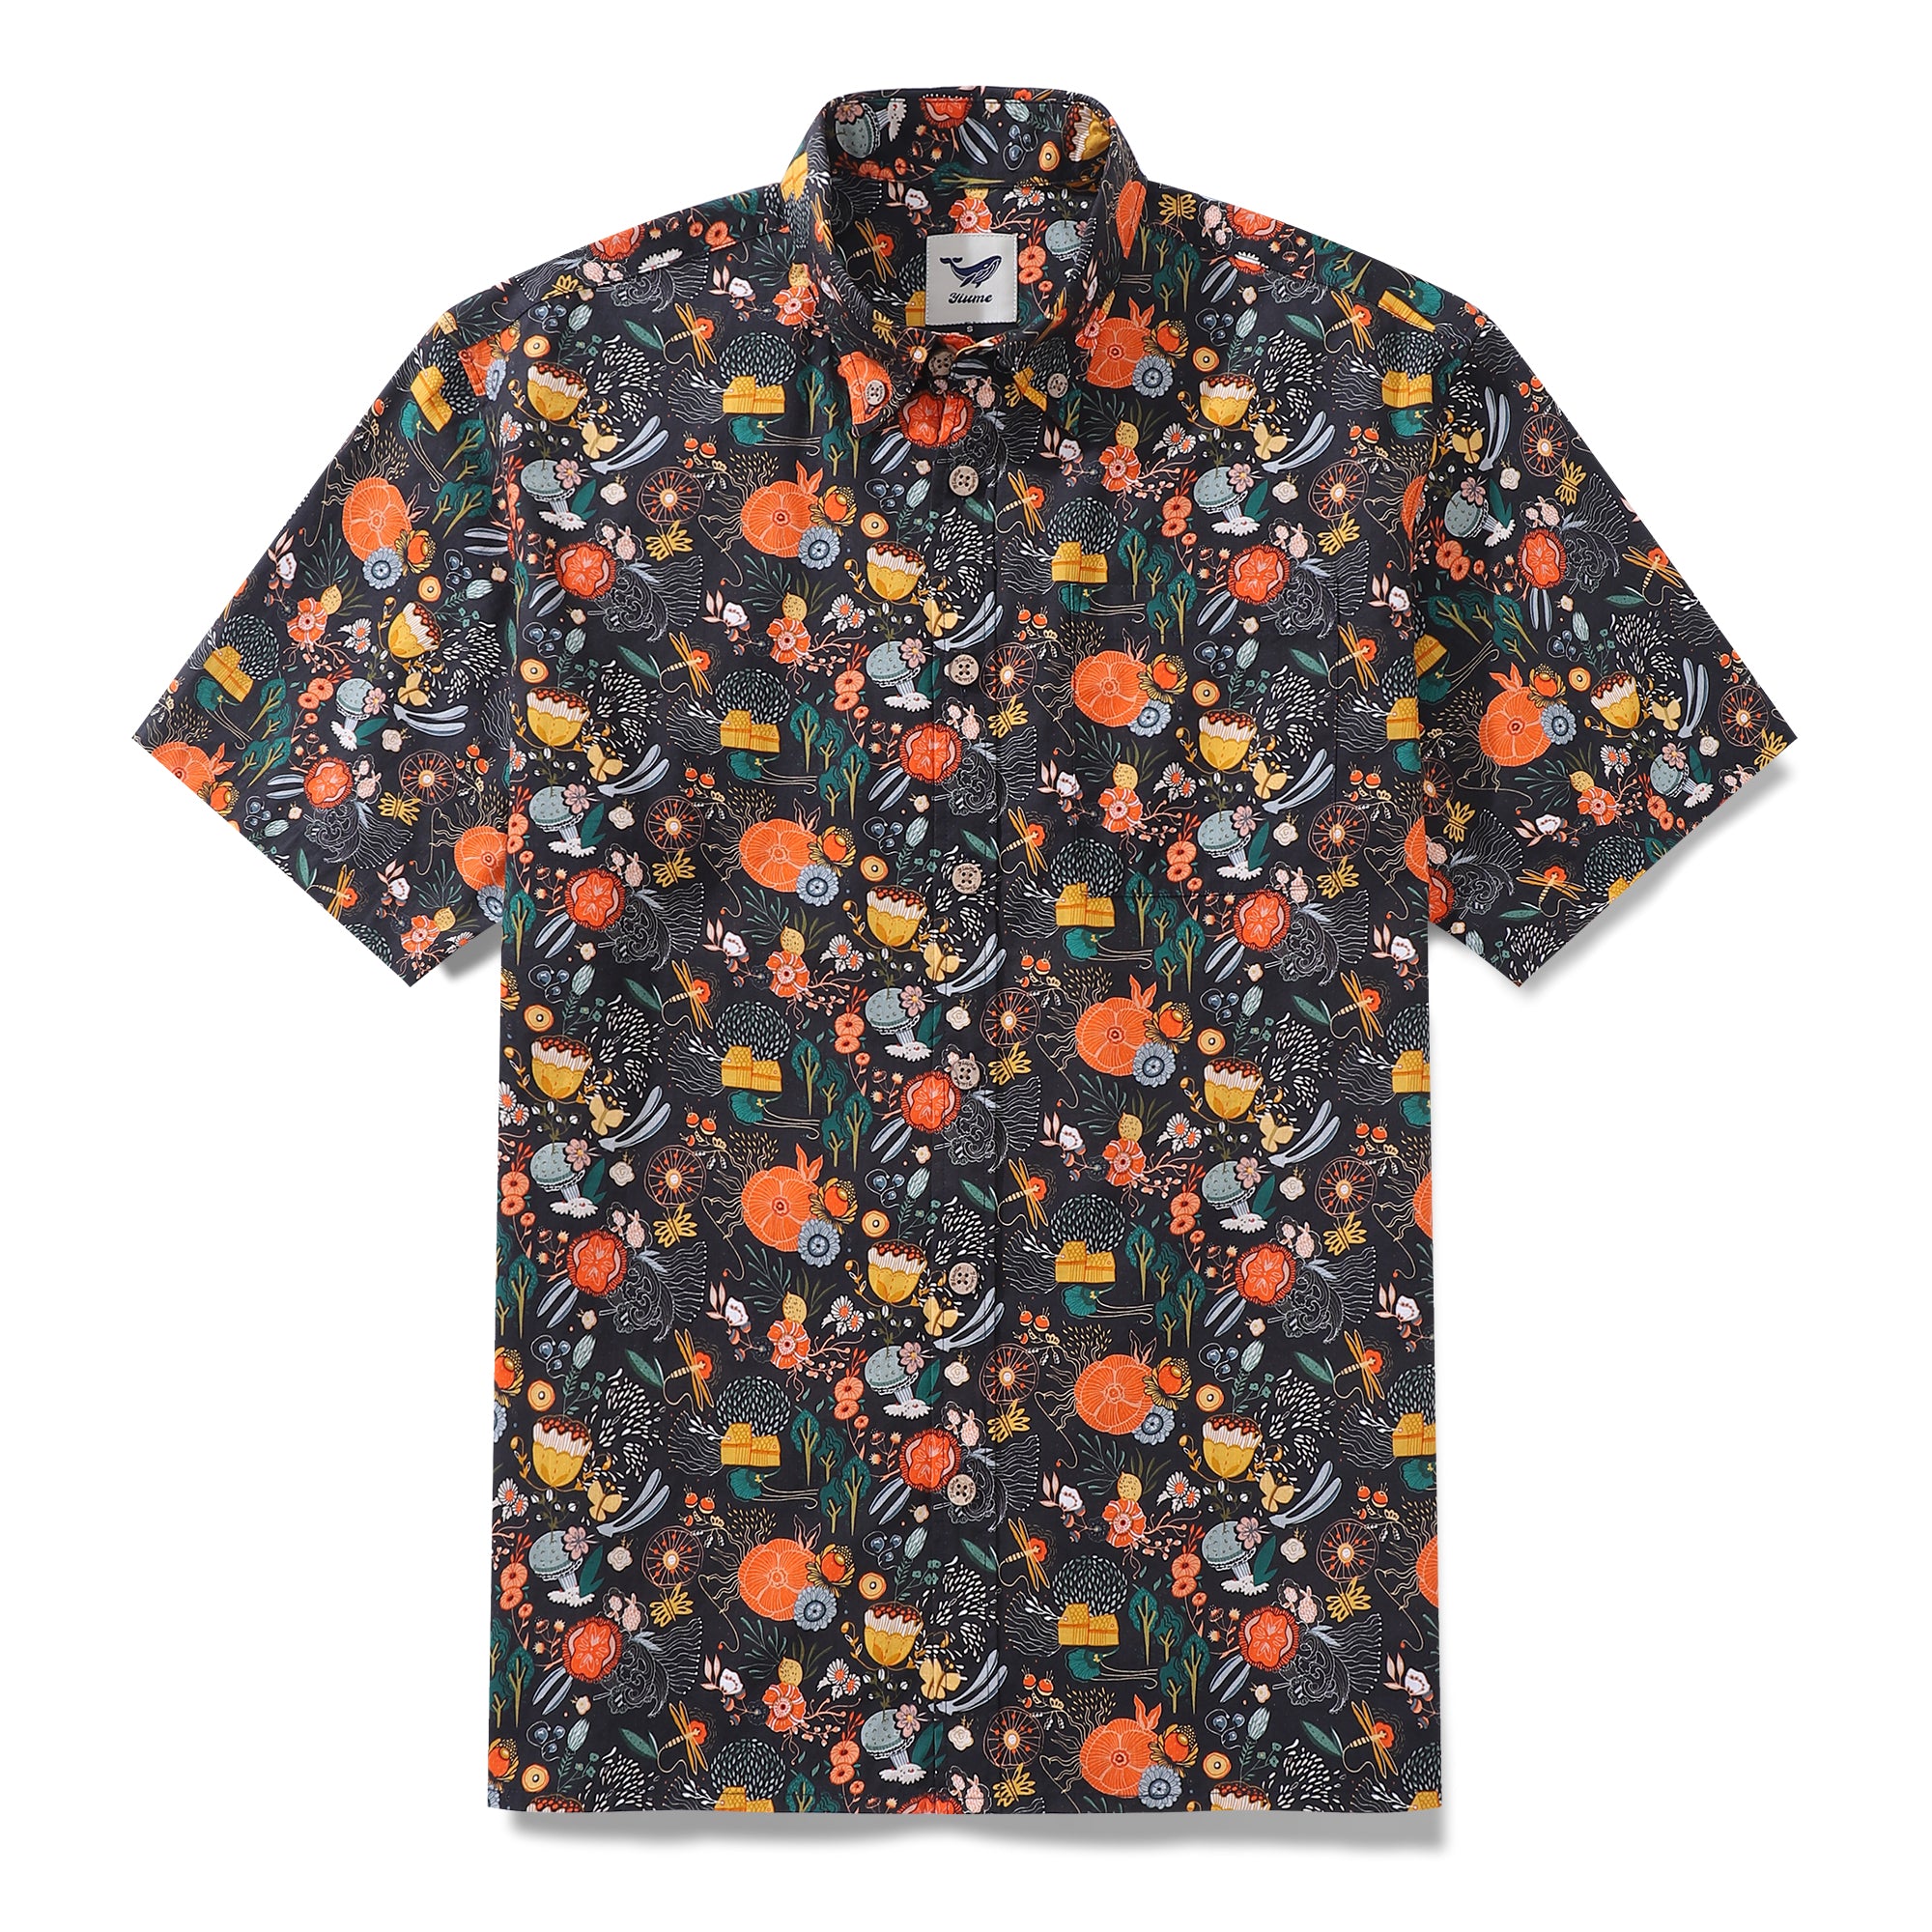 Men's Hawaiian Shirt The Secret Garden Print By Lucille Duchene Cotton Button-down Short Sleeve Aloha Shirt